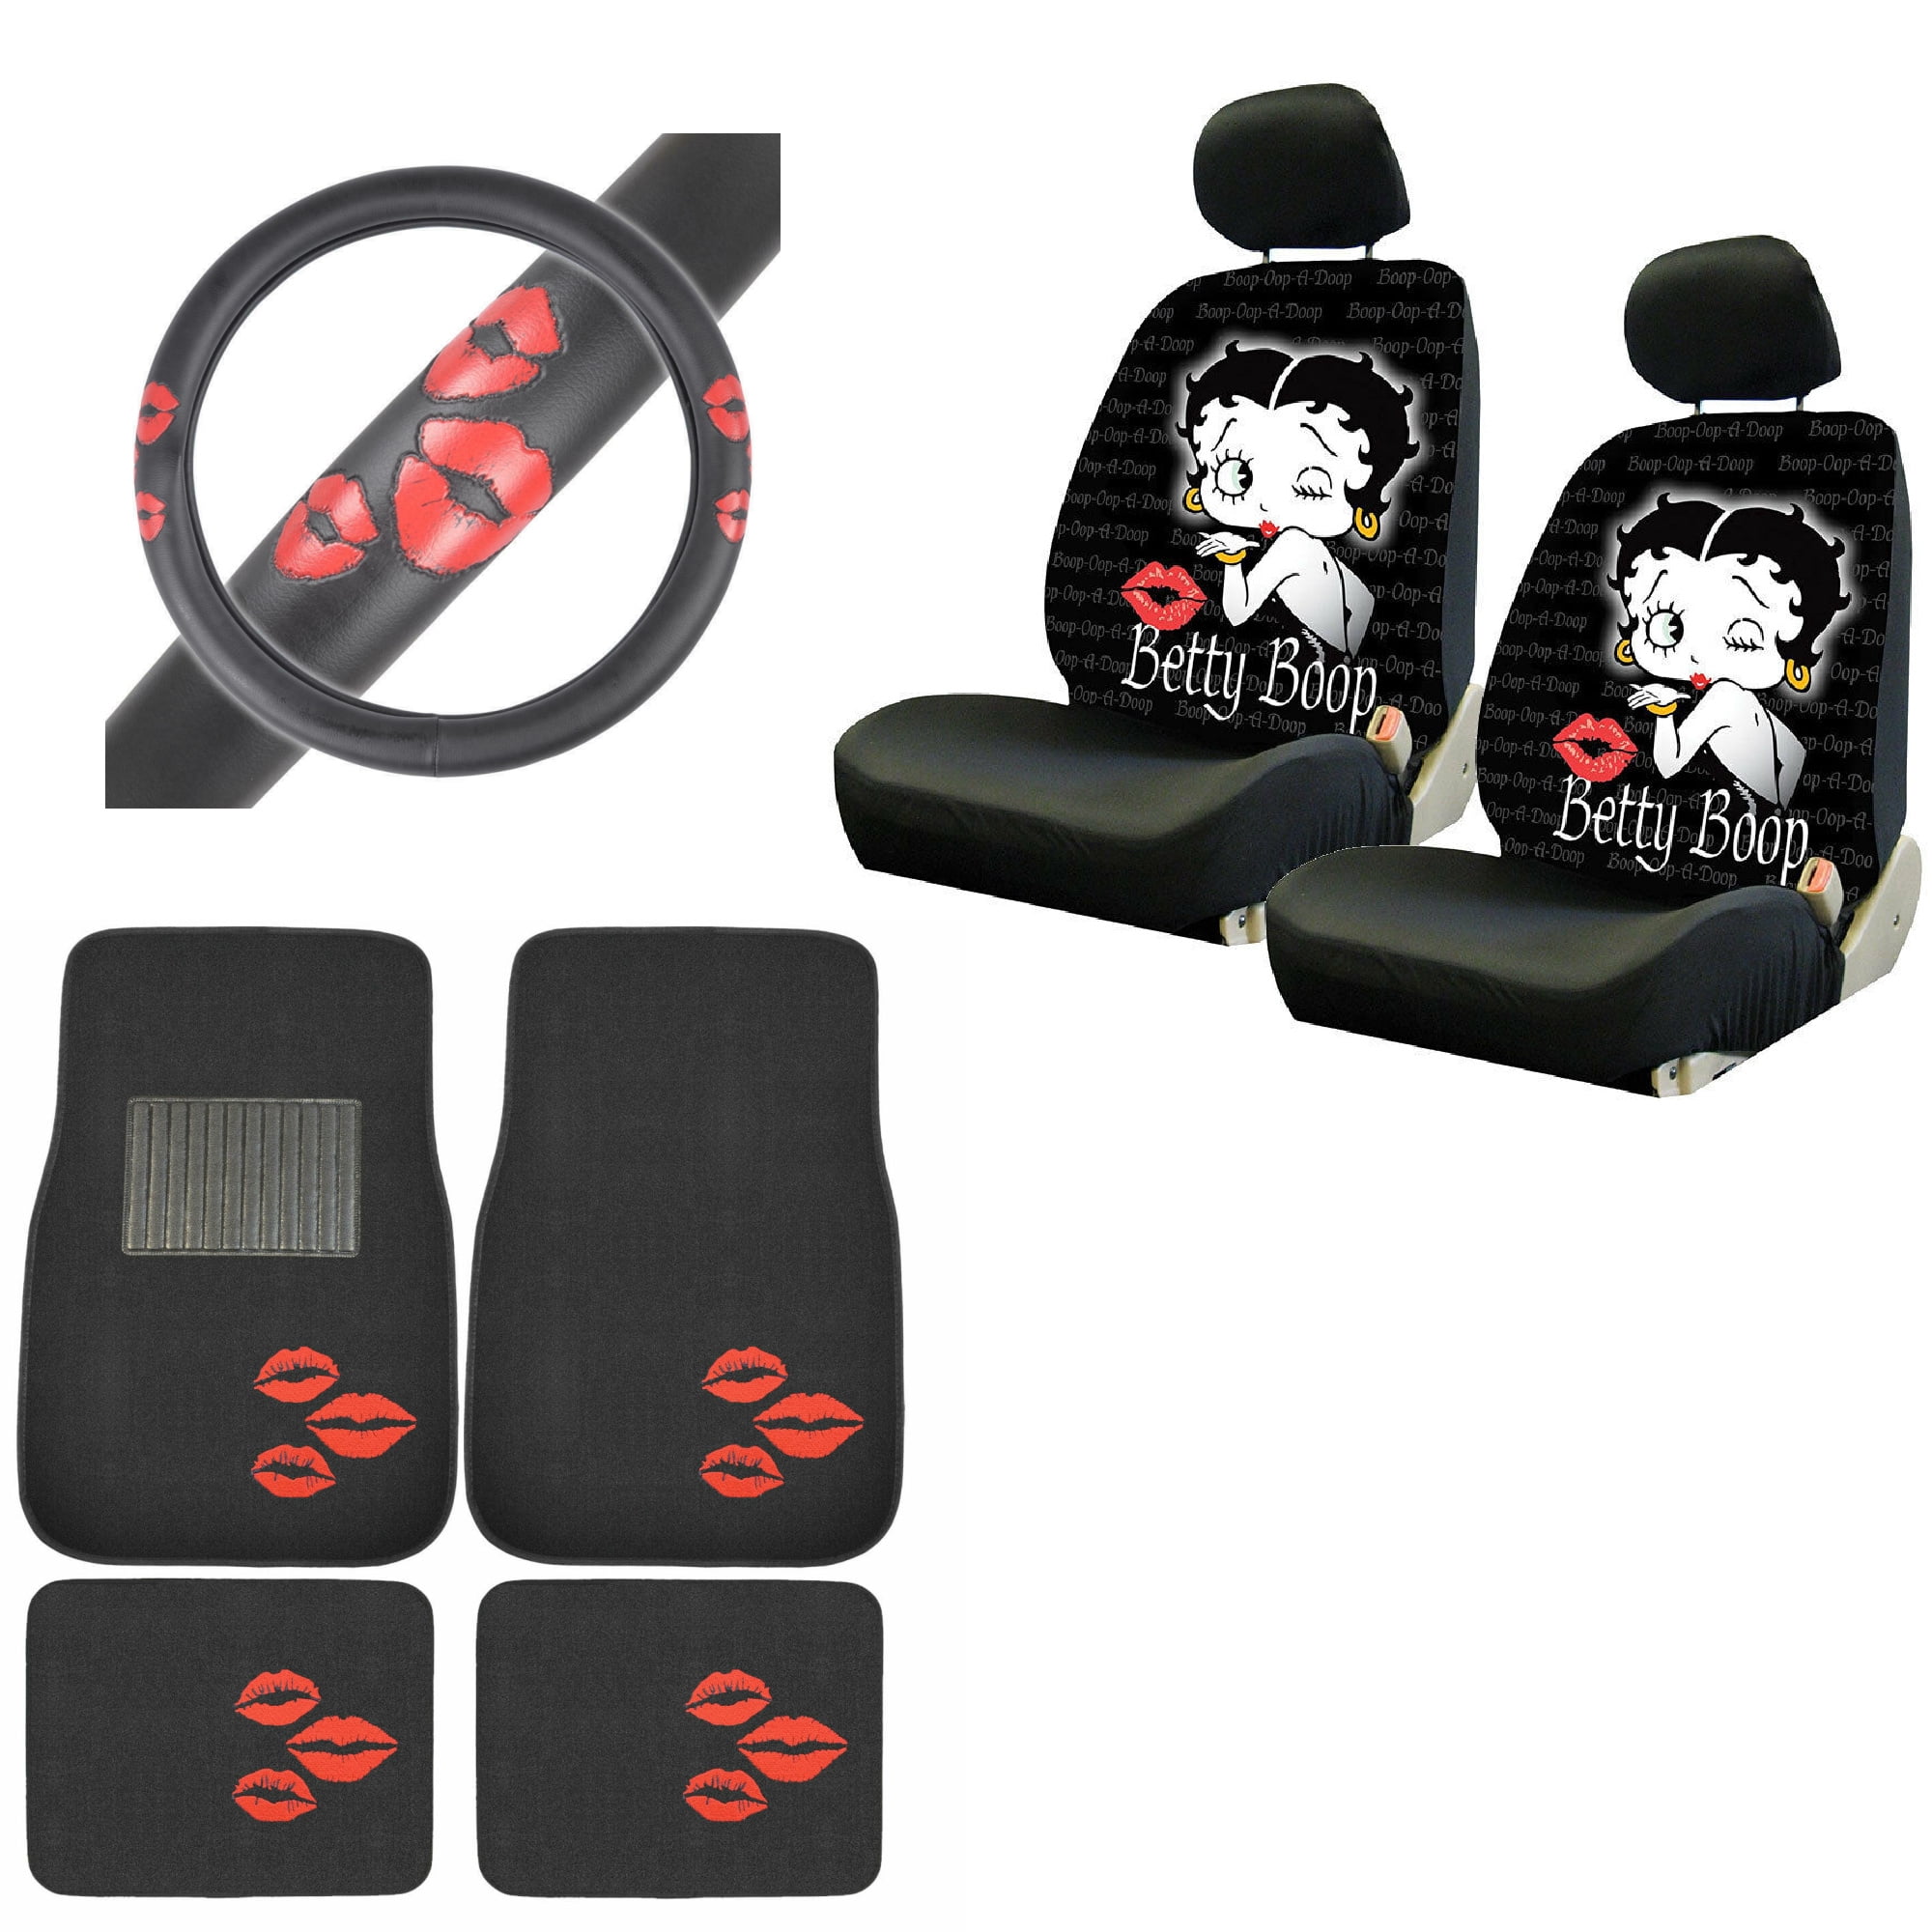 MOMO set 2 car seat belt shoulder pads matte black